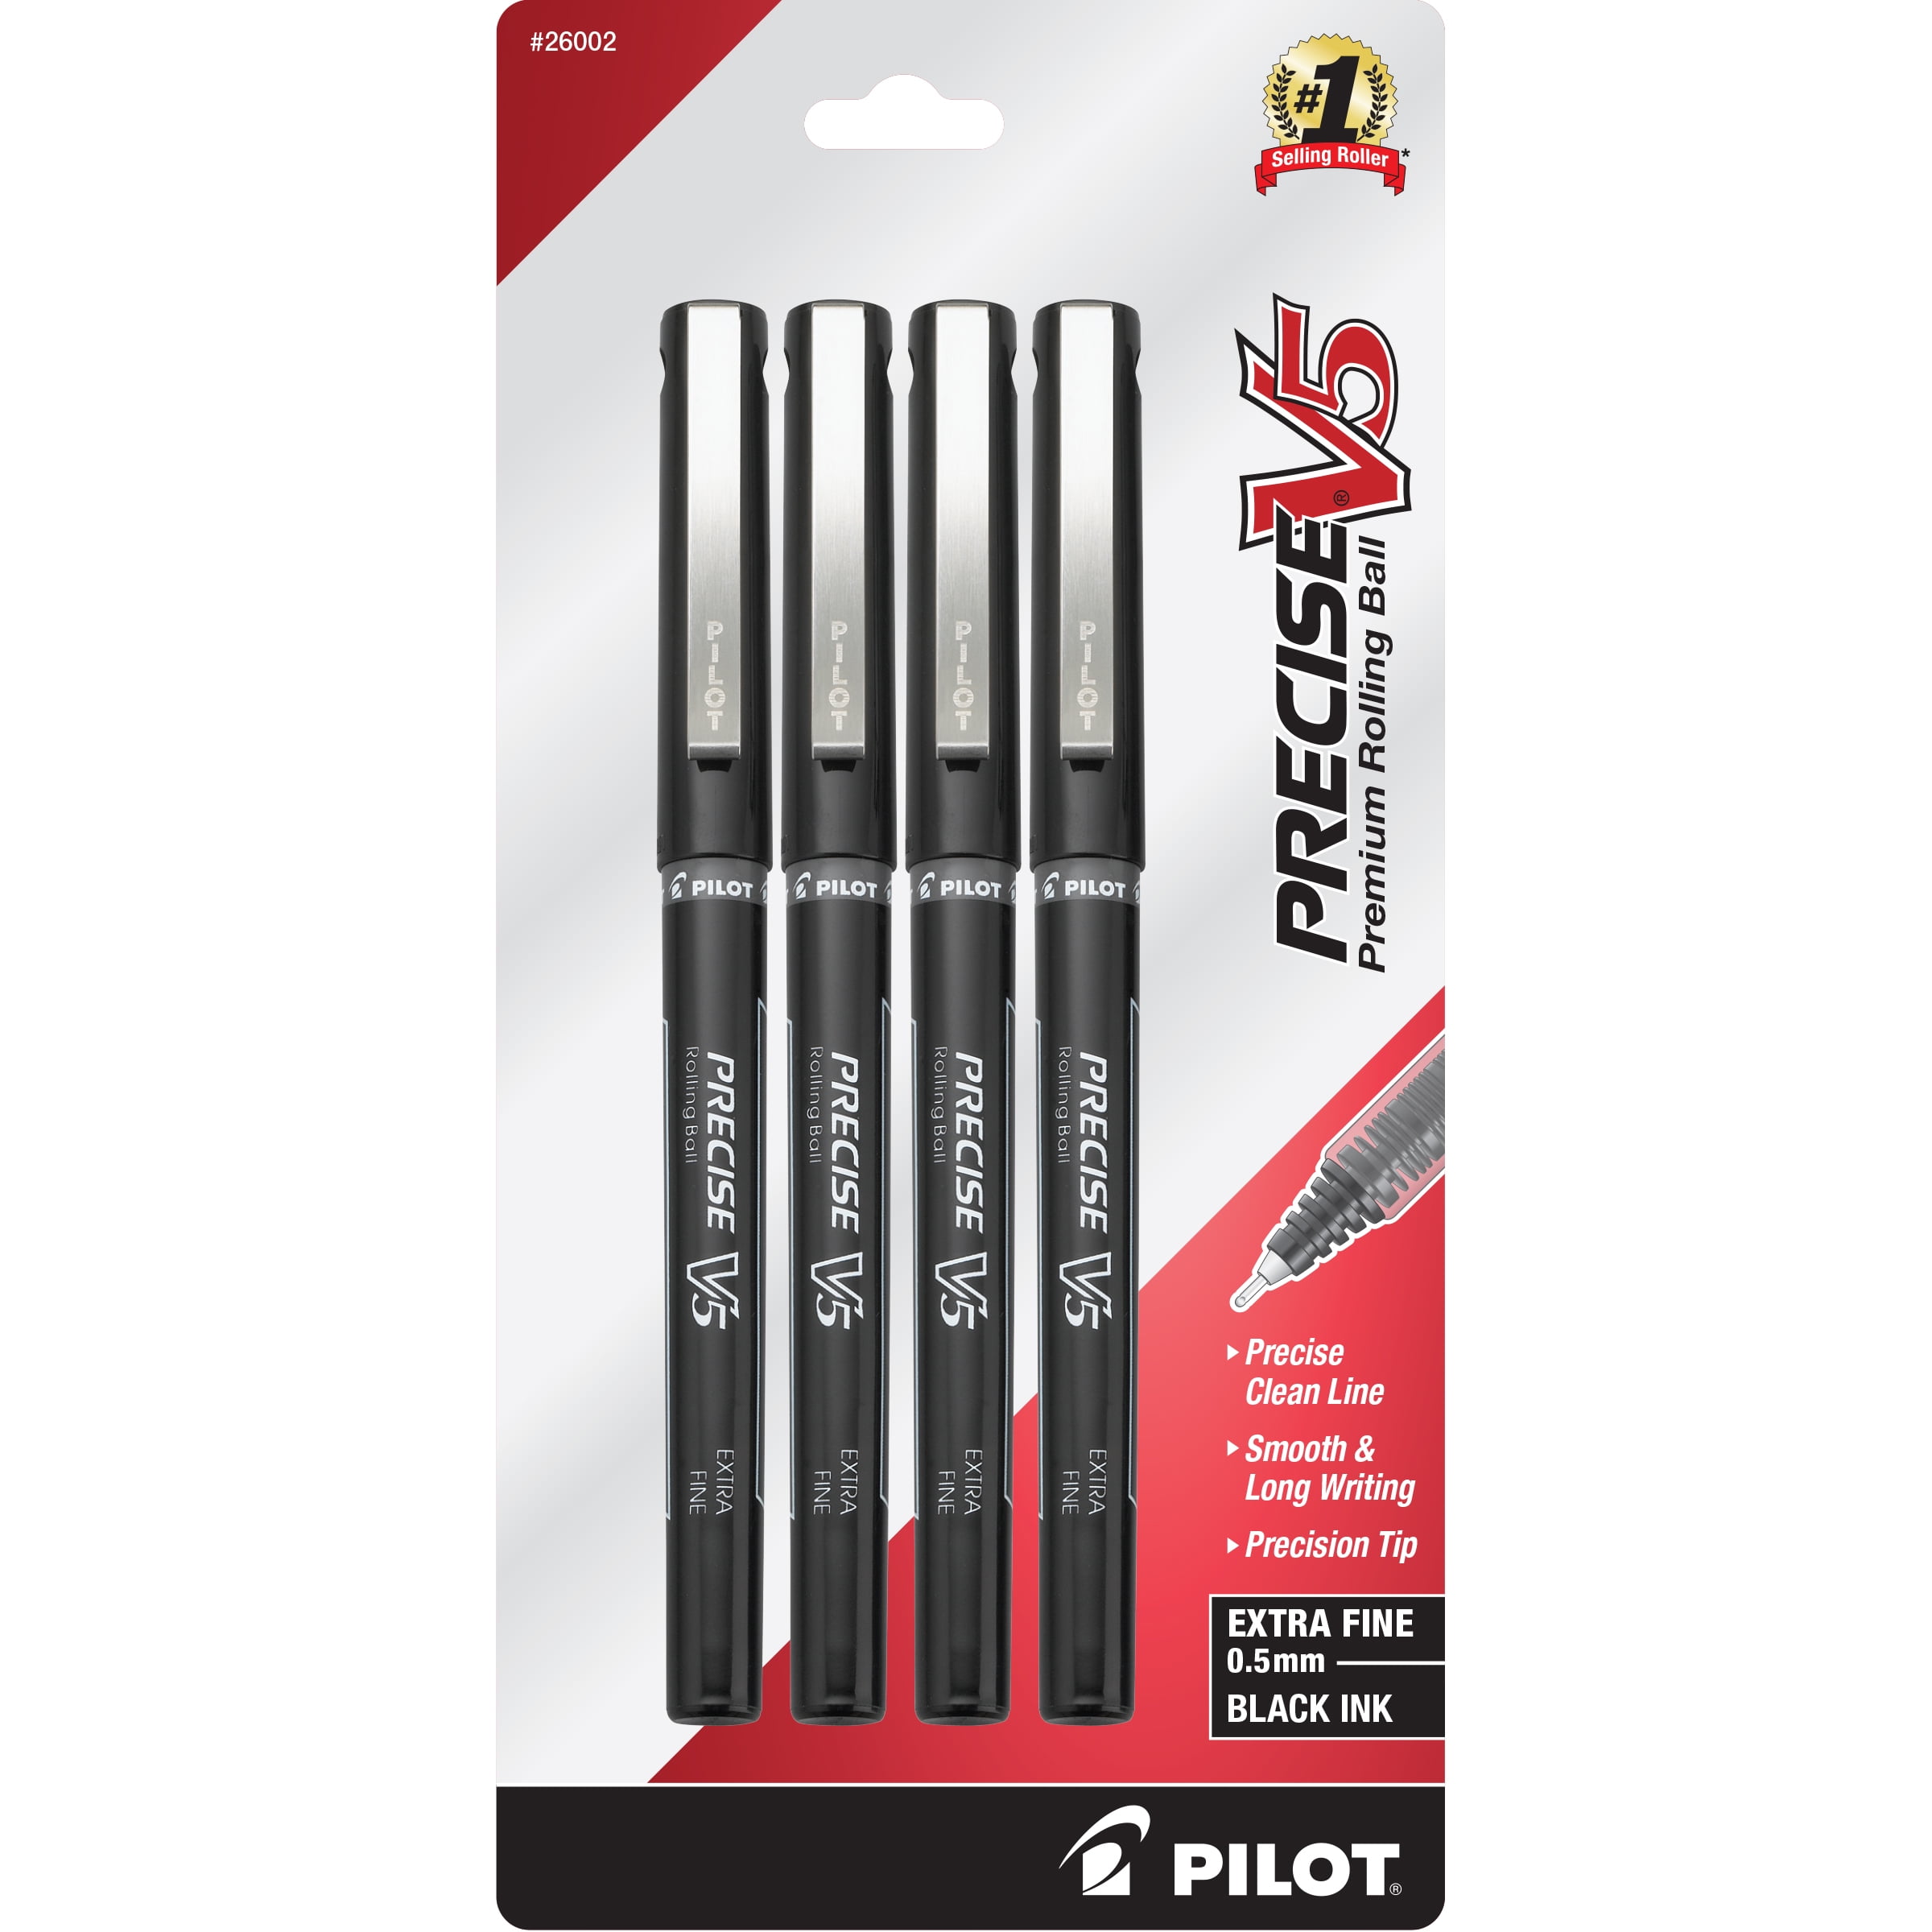 Black -35334 Pilot Precise V5 Roller Ball Stick Pen for sale online 12 Pack 